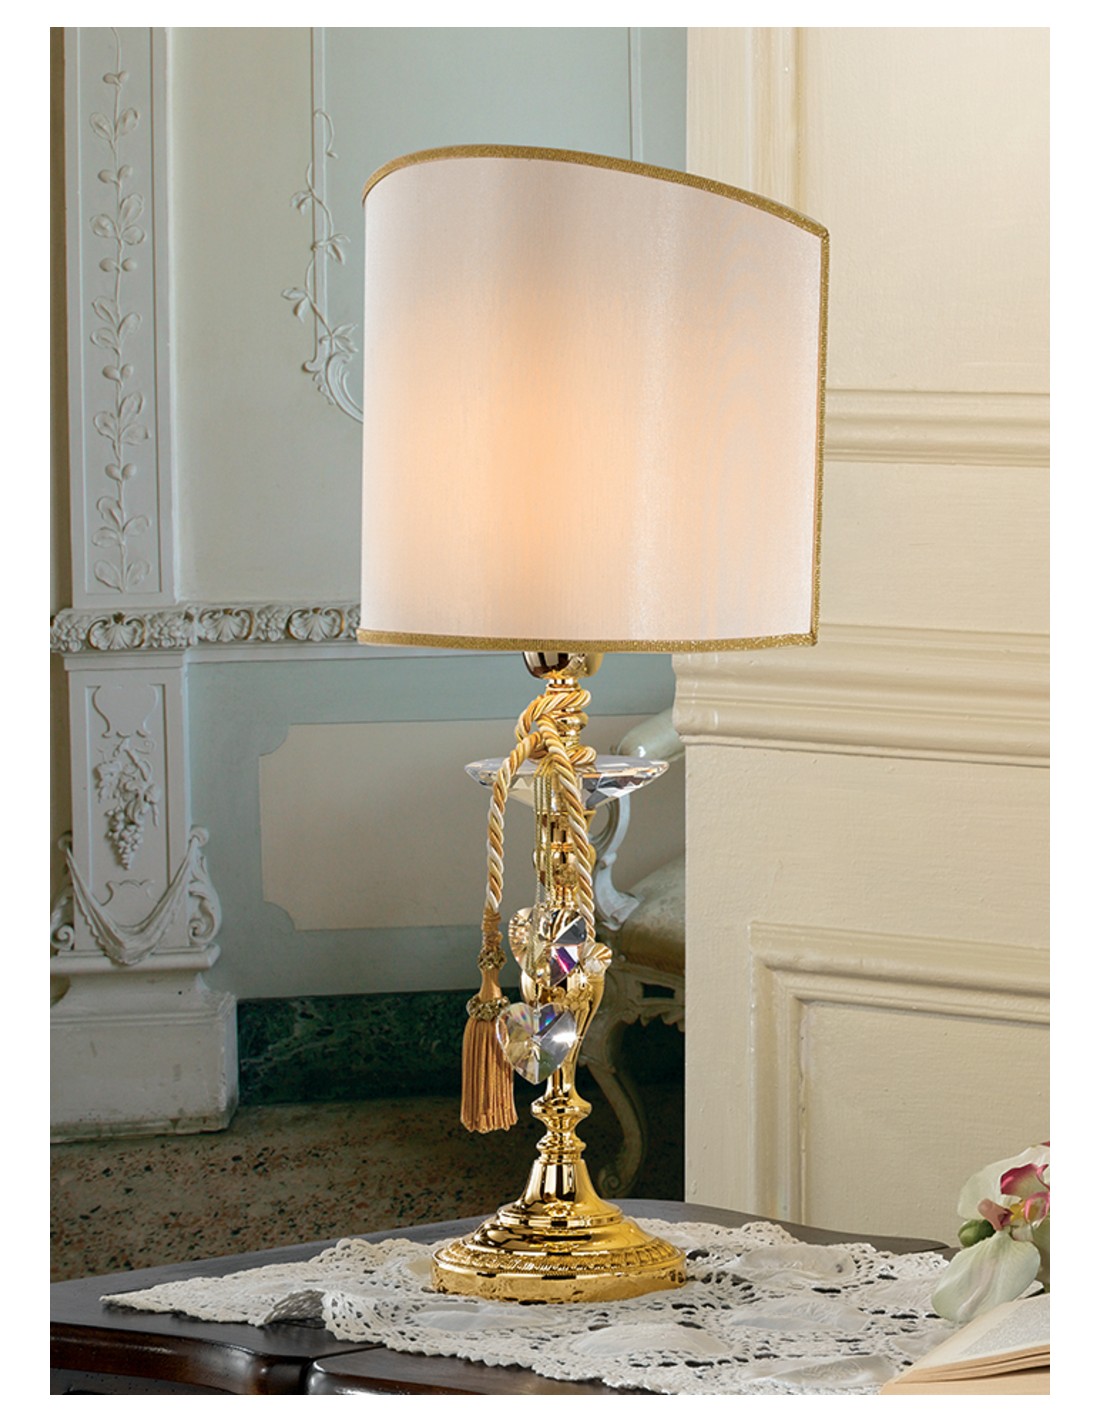 Bonetti illumina Leonardo lume lampada da tavolo grande con paralume  plissettato avorio oro